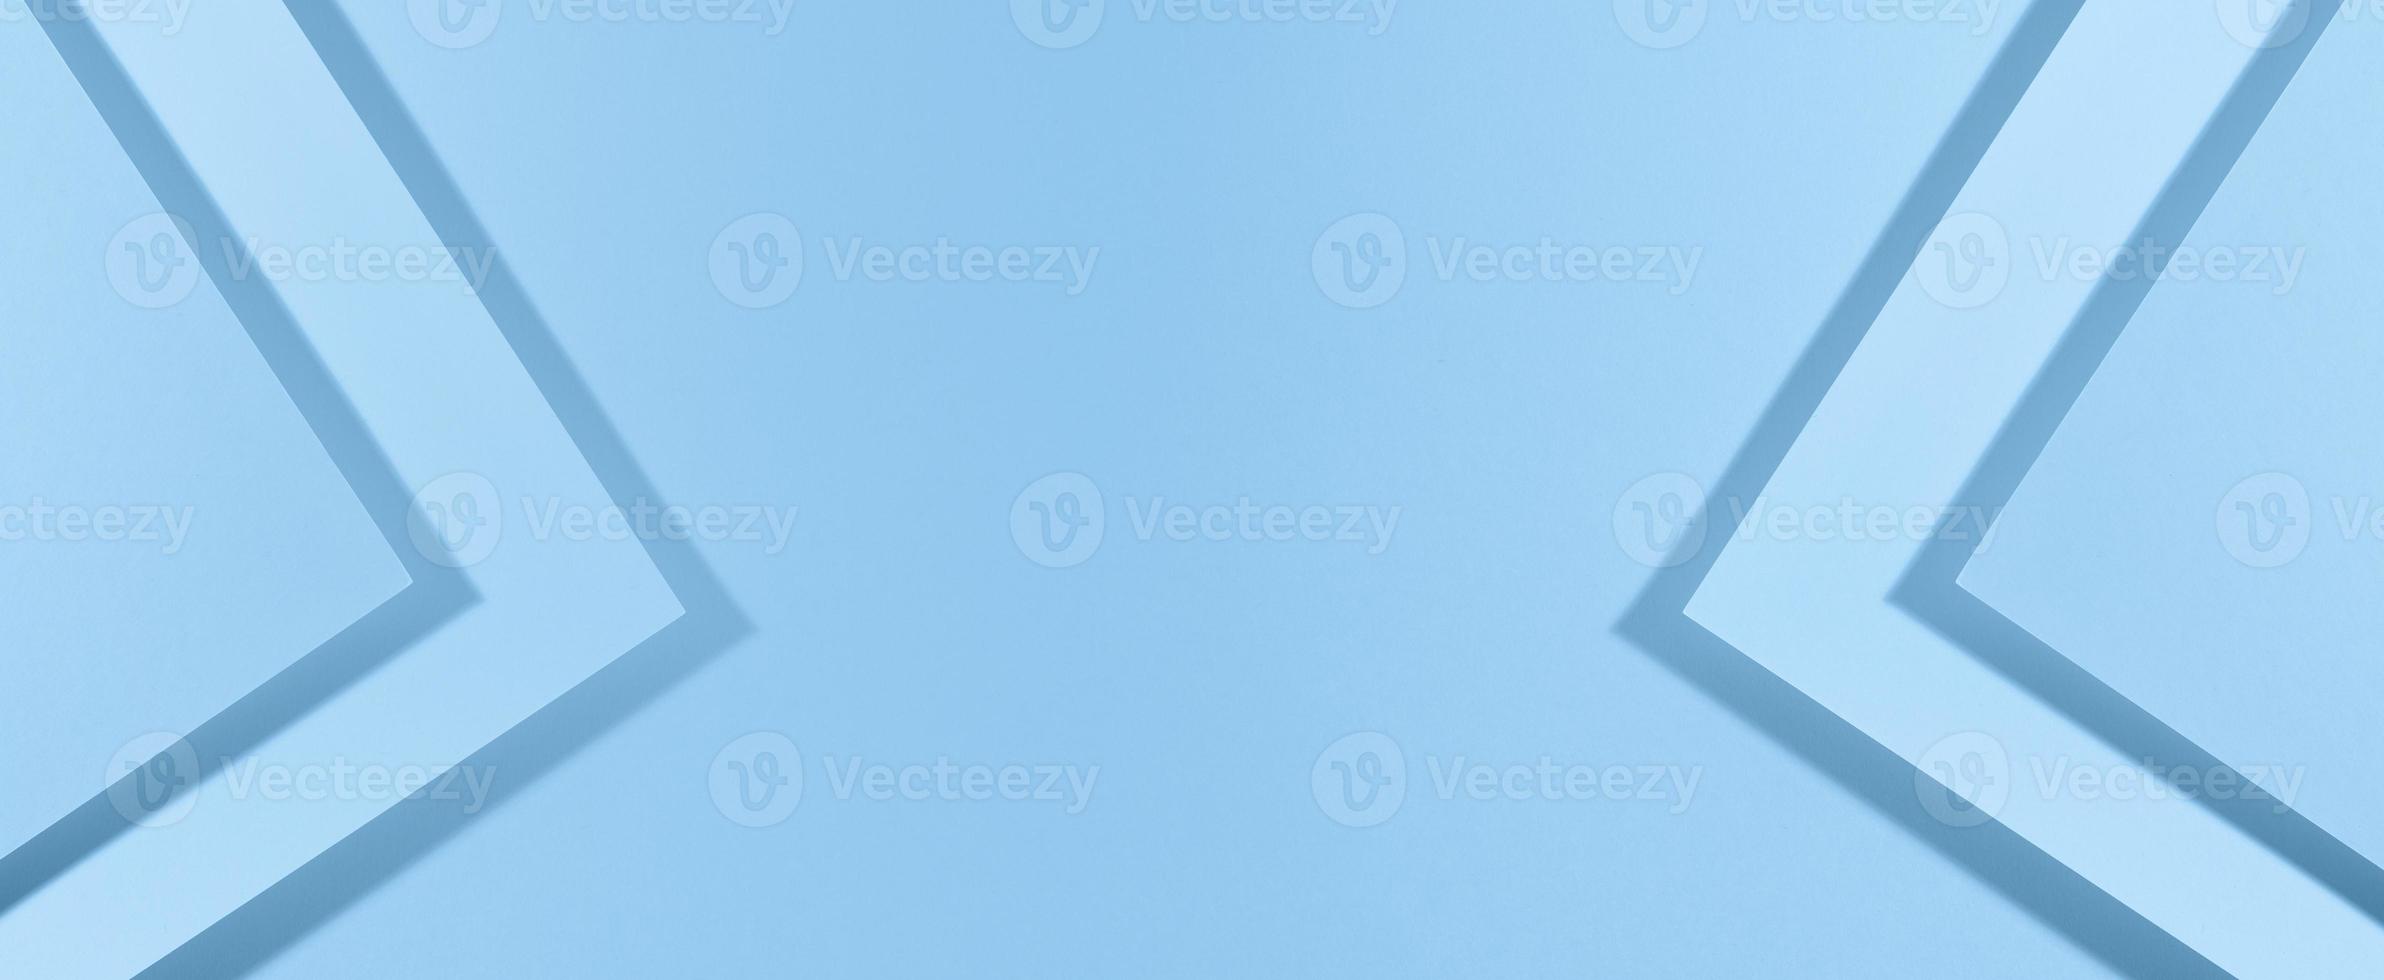 fundo azul moderno com folhas de papel com sombra. modelo para negócios, banner foto